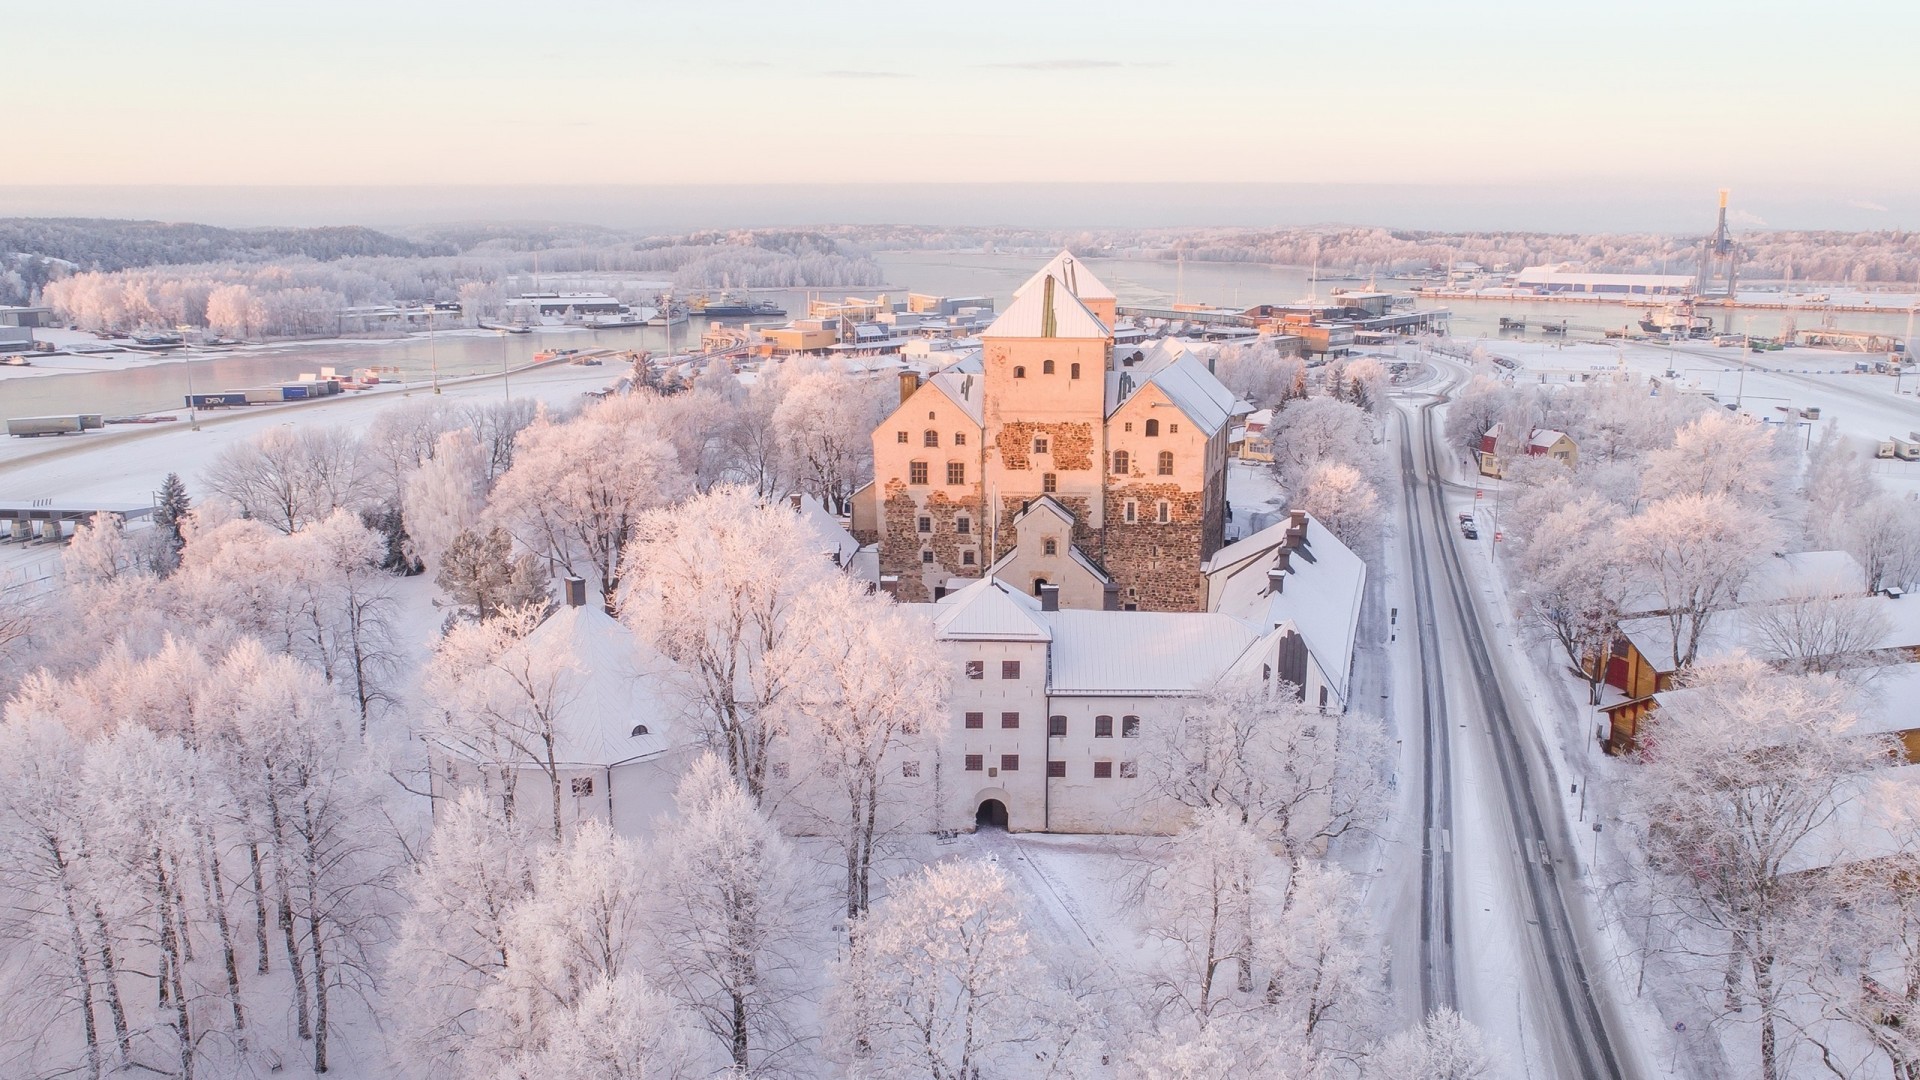 Turku, Finland, Snow, Cold, Winter, Trees - Turku Finland Winter - HD Wallpaper 